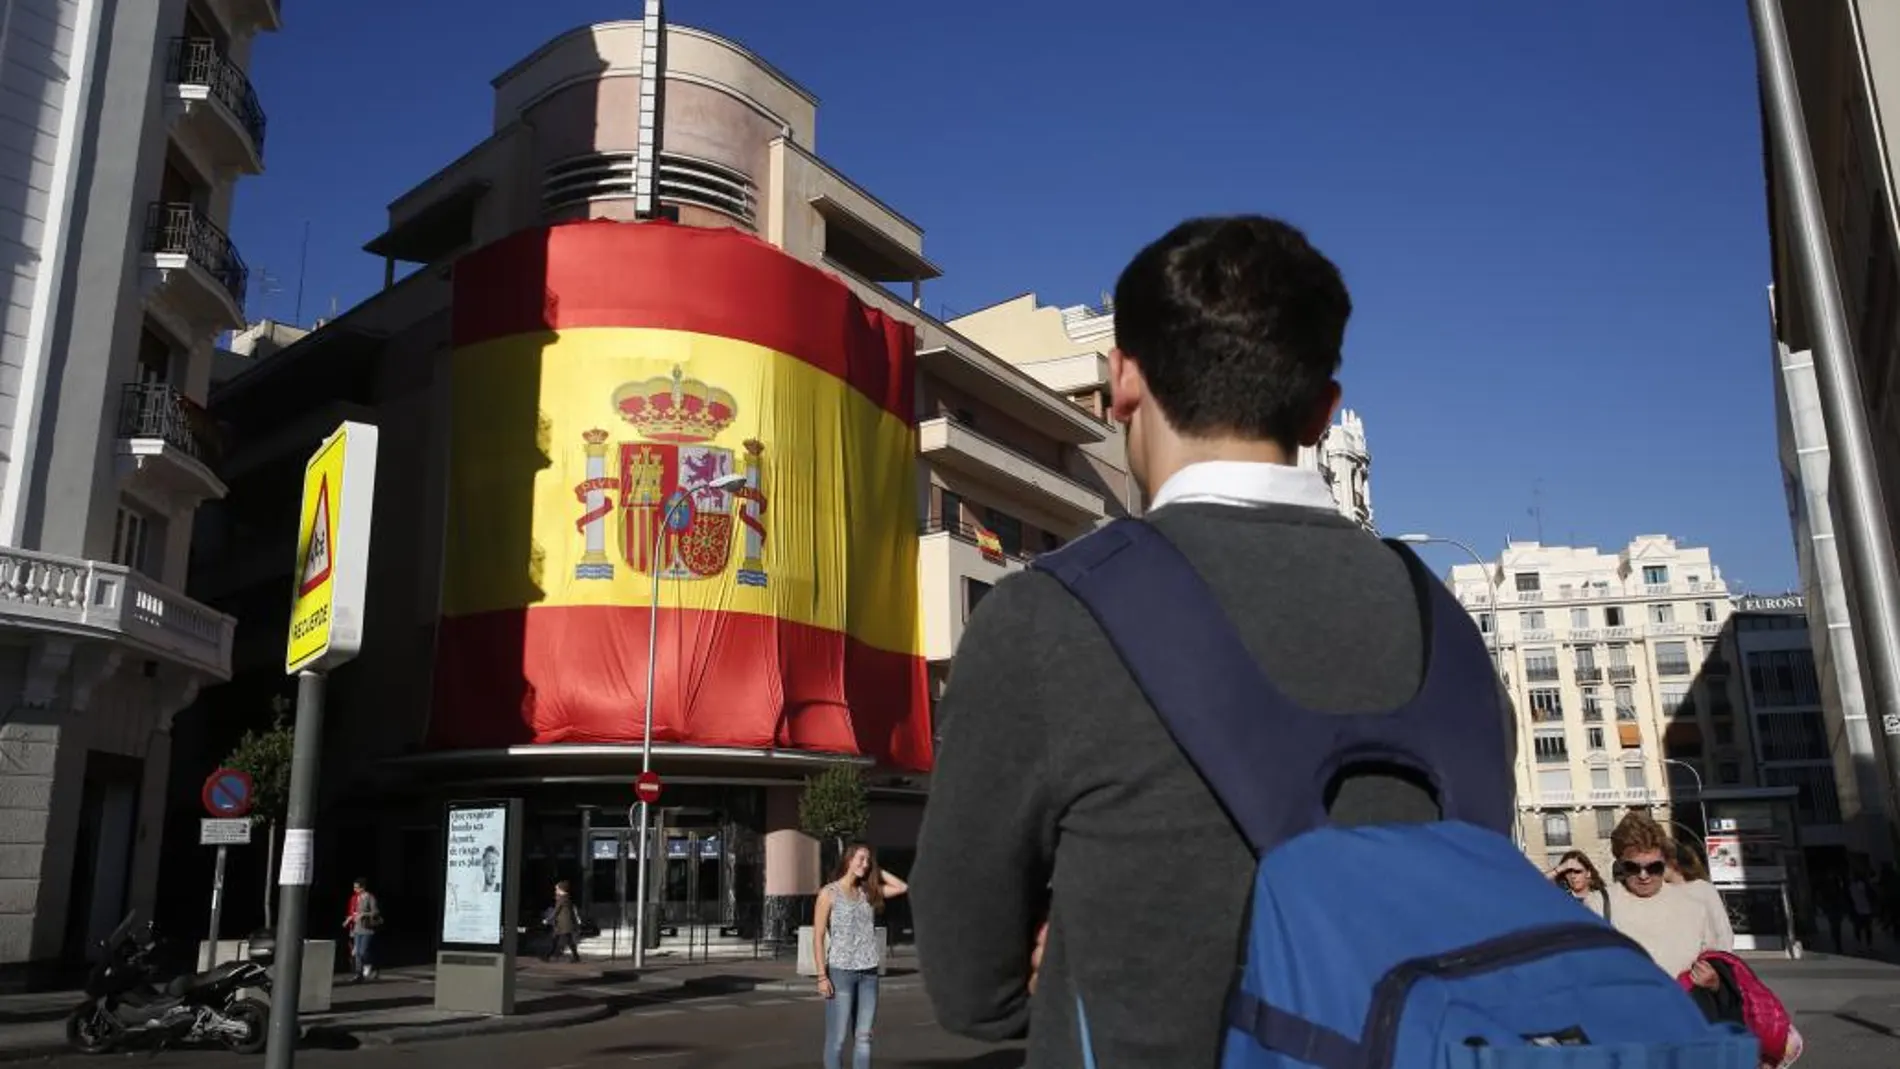 El teatro Barceló instaló una bandera de España gigante